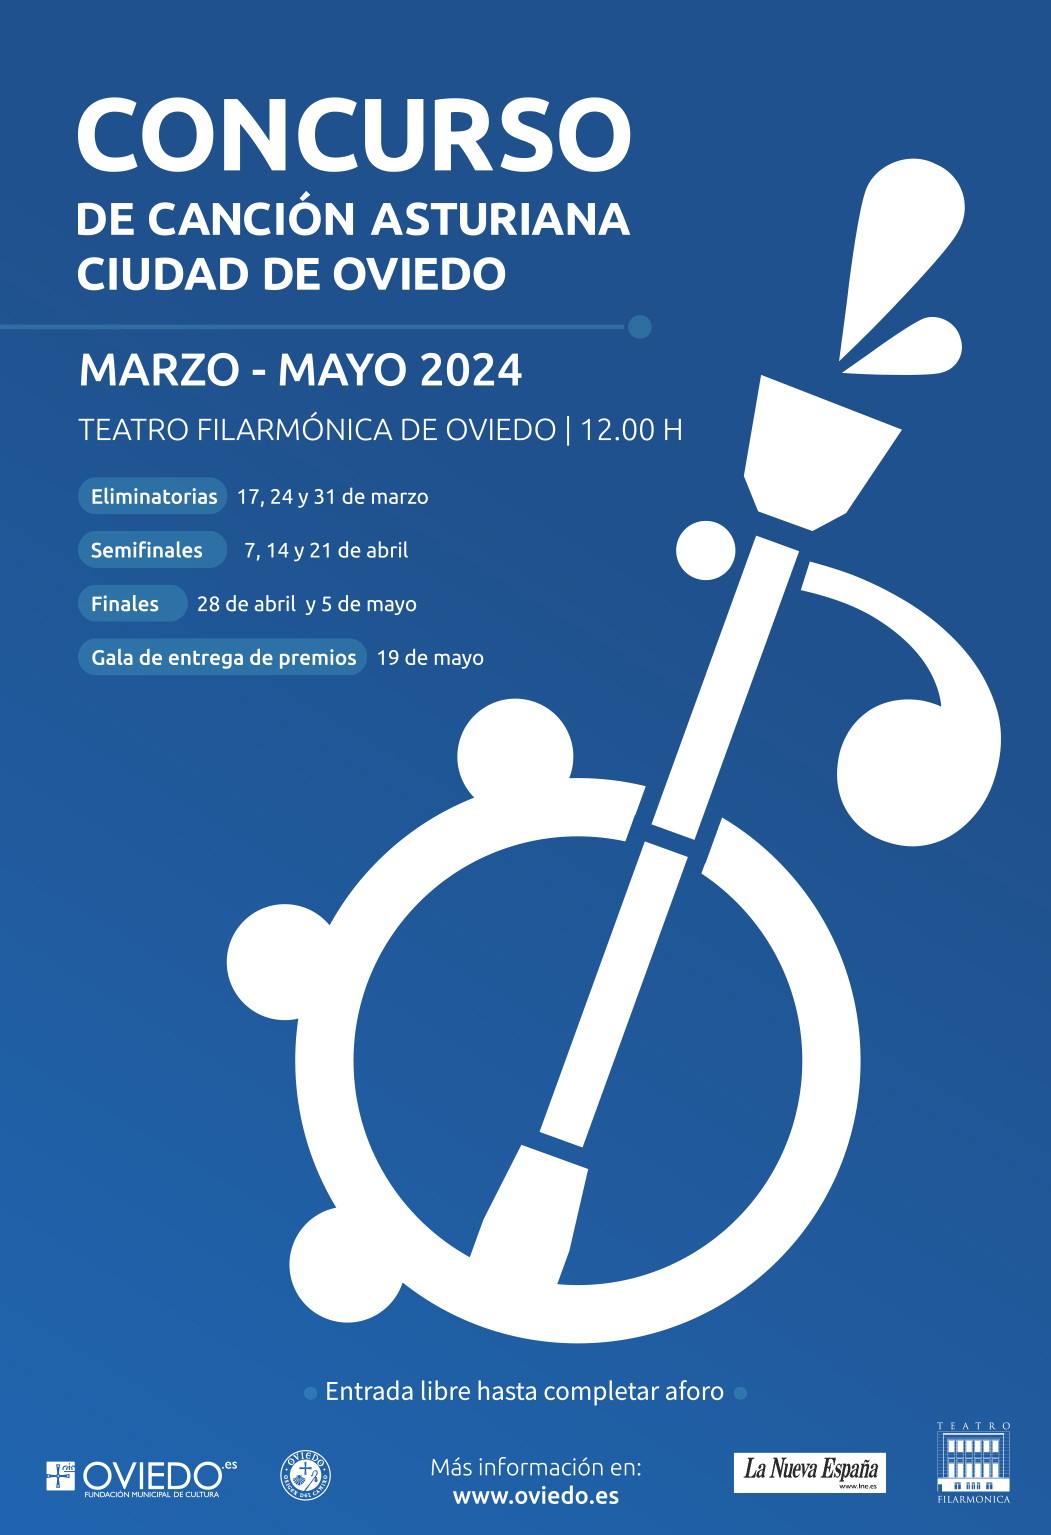 Concurso de Canción Asturiana Ciudad de Oviedo 2024